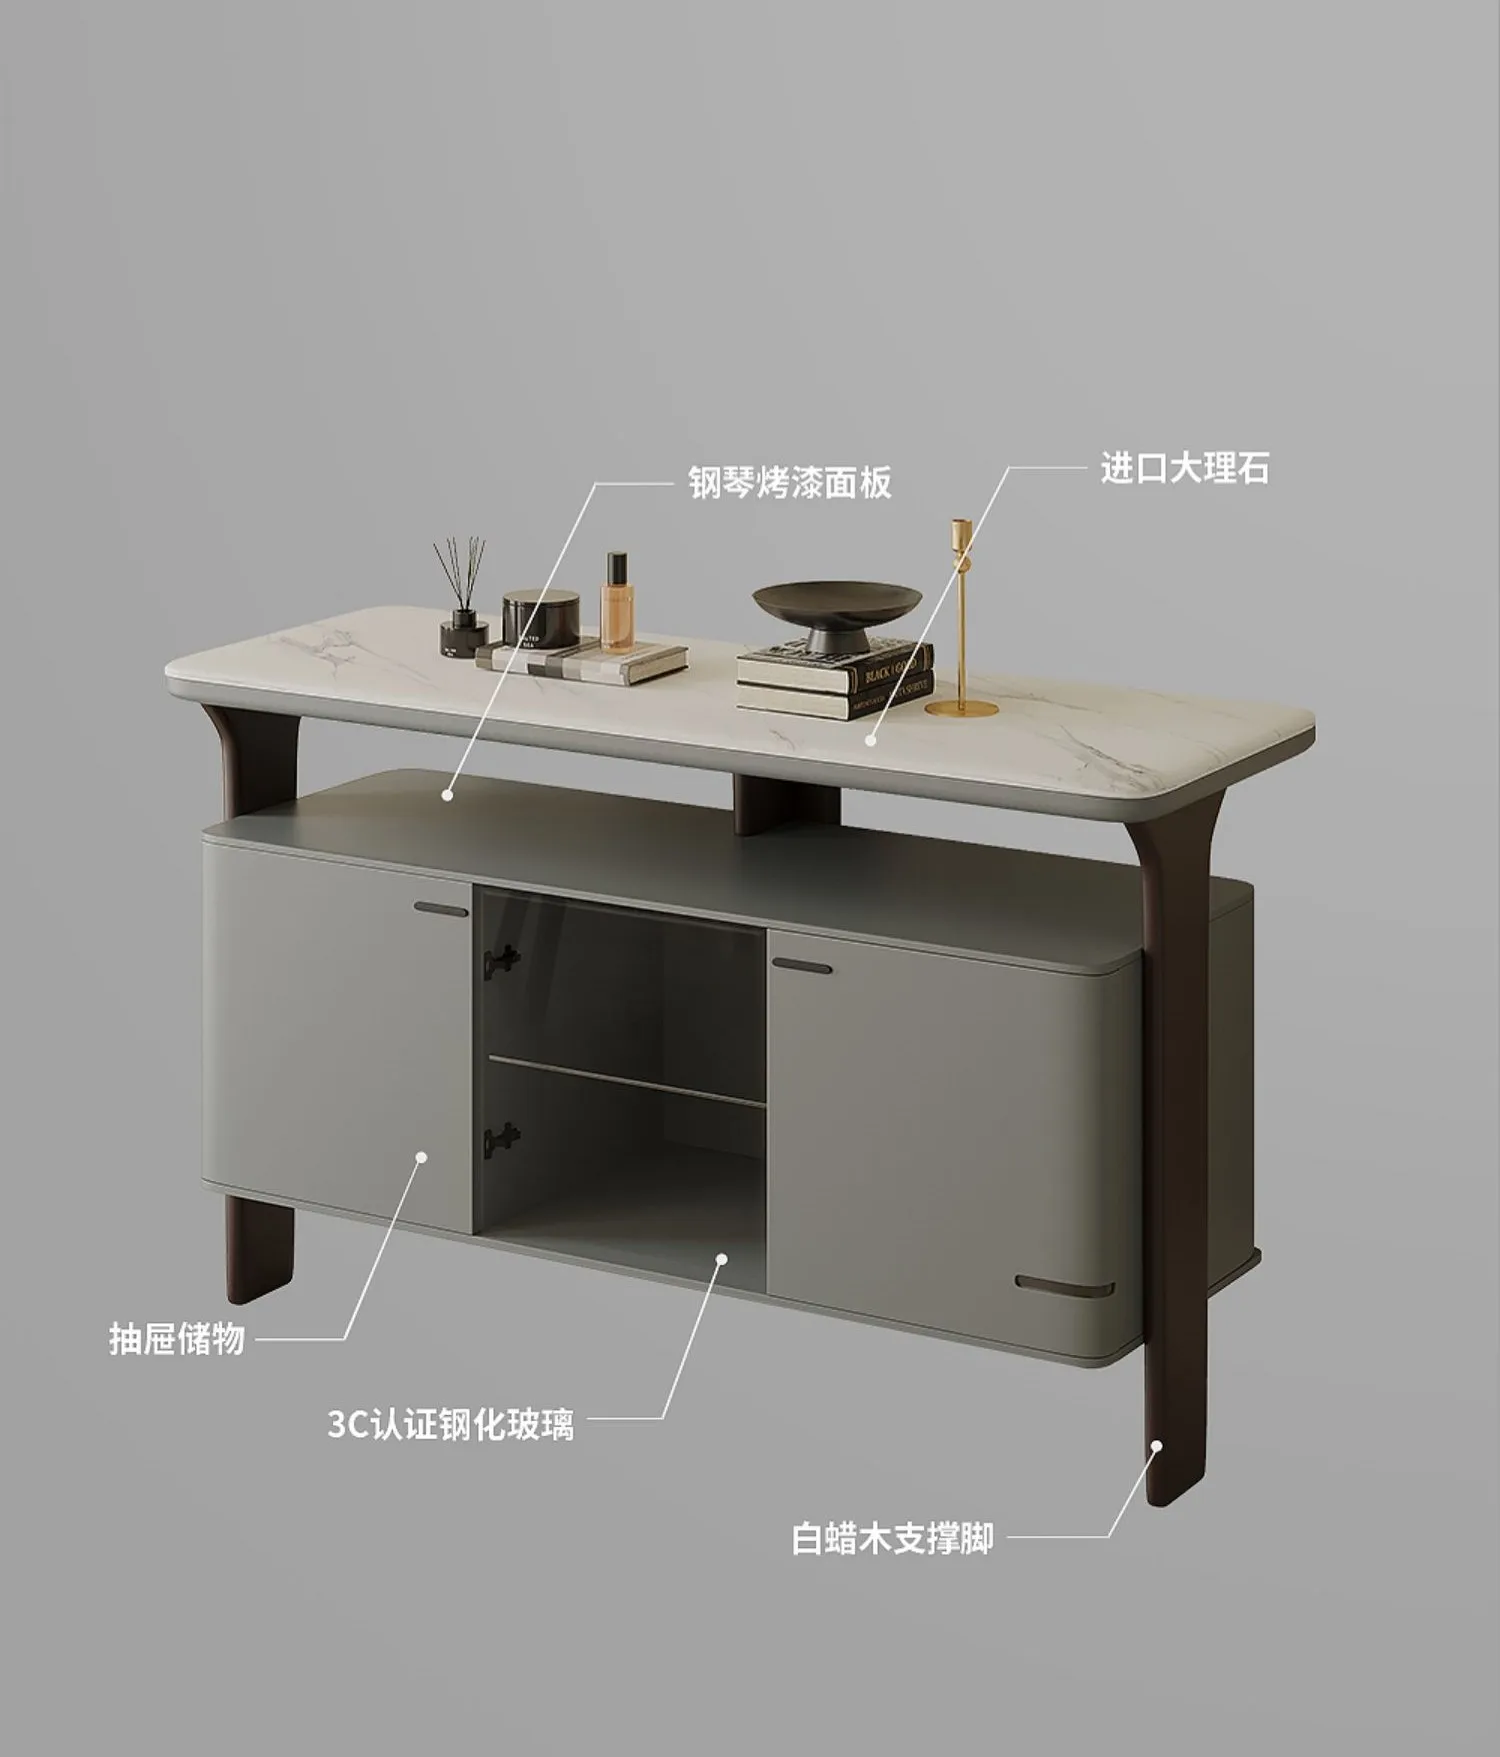 Модерен и минималистичен мрамор шкаф за съхранение на вещи за домашно използване, с висока стена шкаф и маса за странично шкафче4